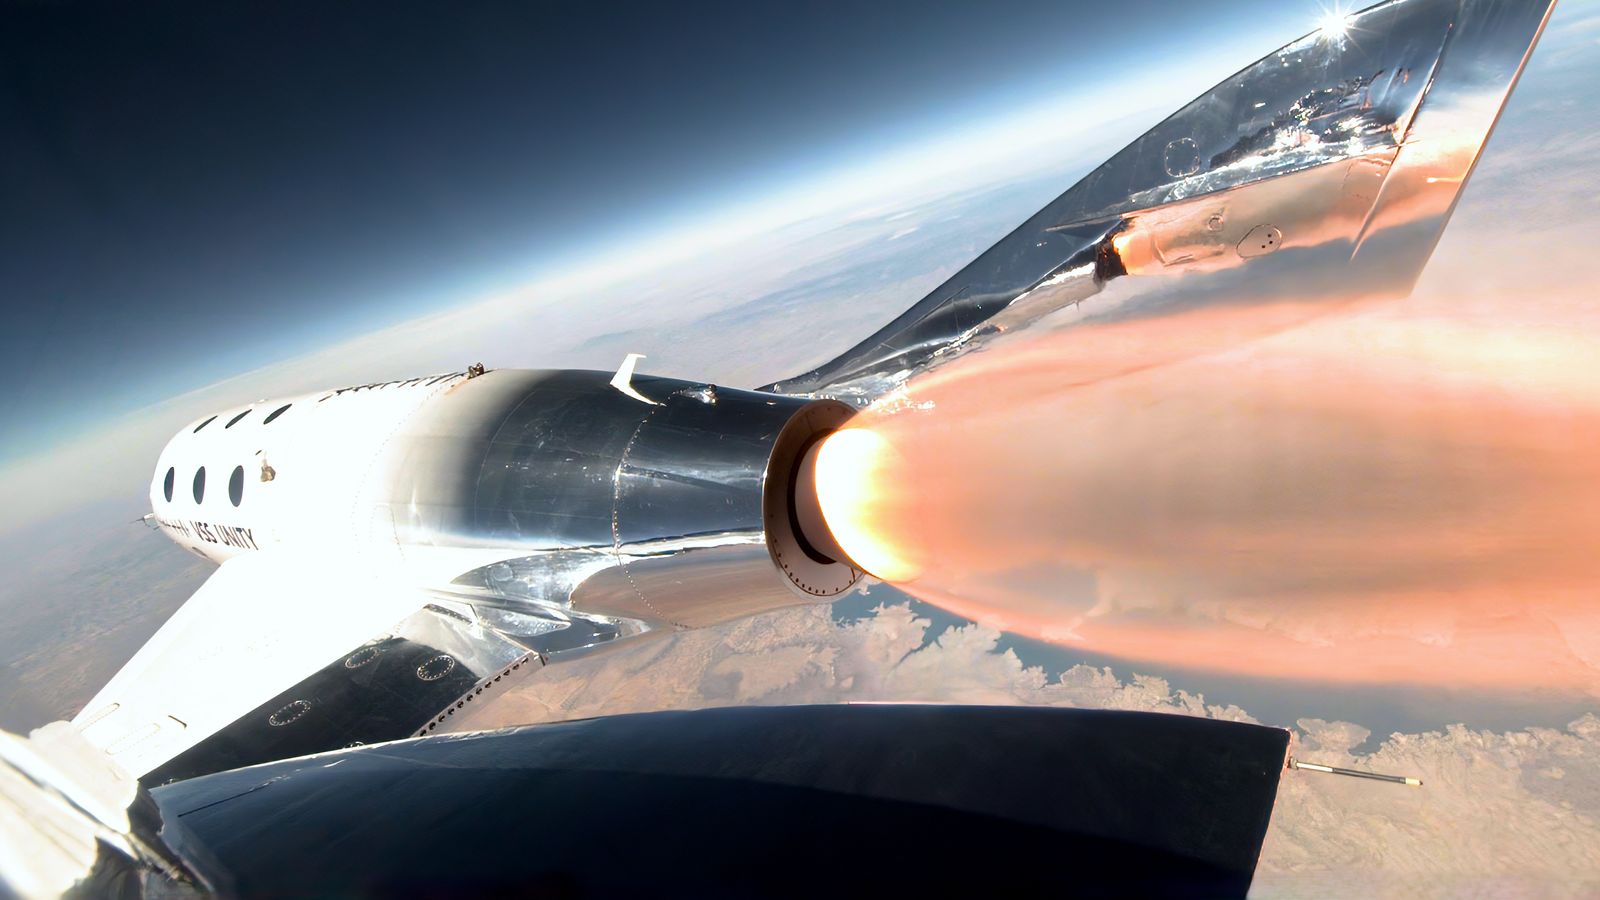 Първият полет за космически туризъм на Virgin Galactic стартира днес - ето какво трябва да знаете